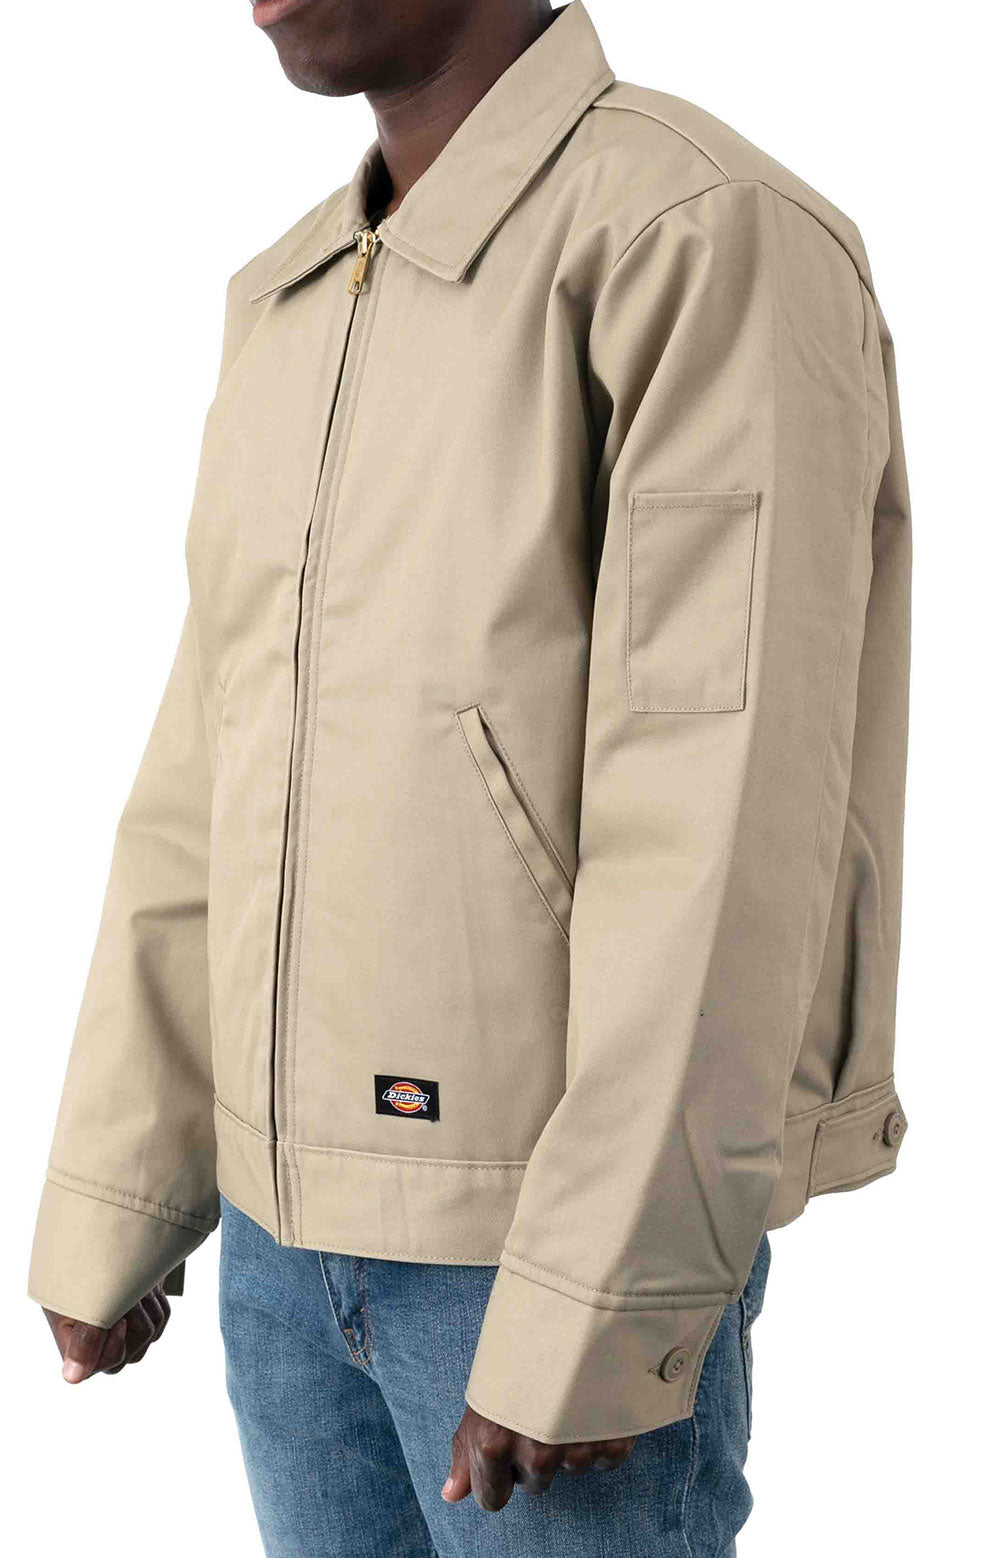 (TJ15KH) Insulated Eisenhower Jacket - Khaki